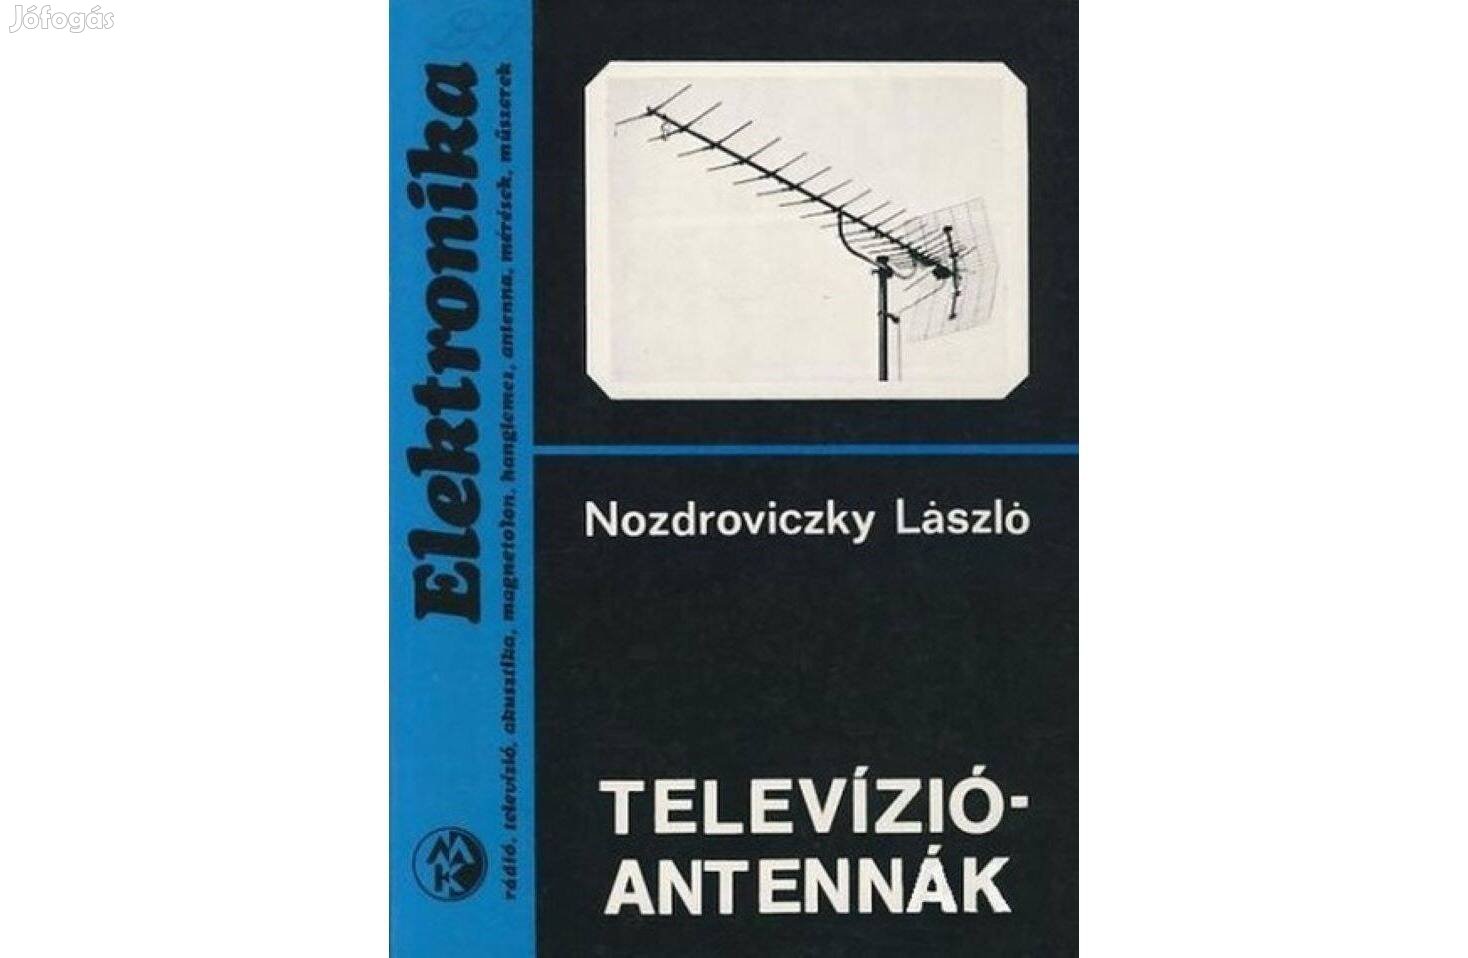 Nozdroviczky László: Televízió antennák